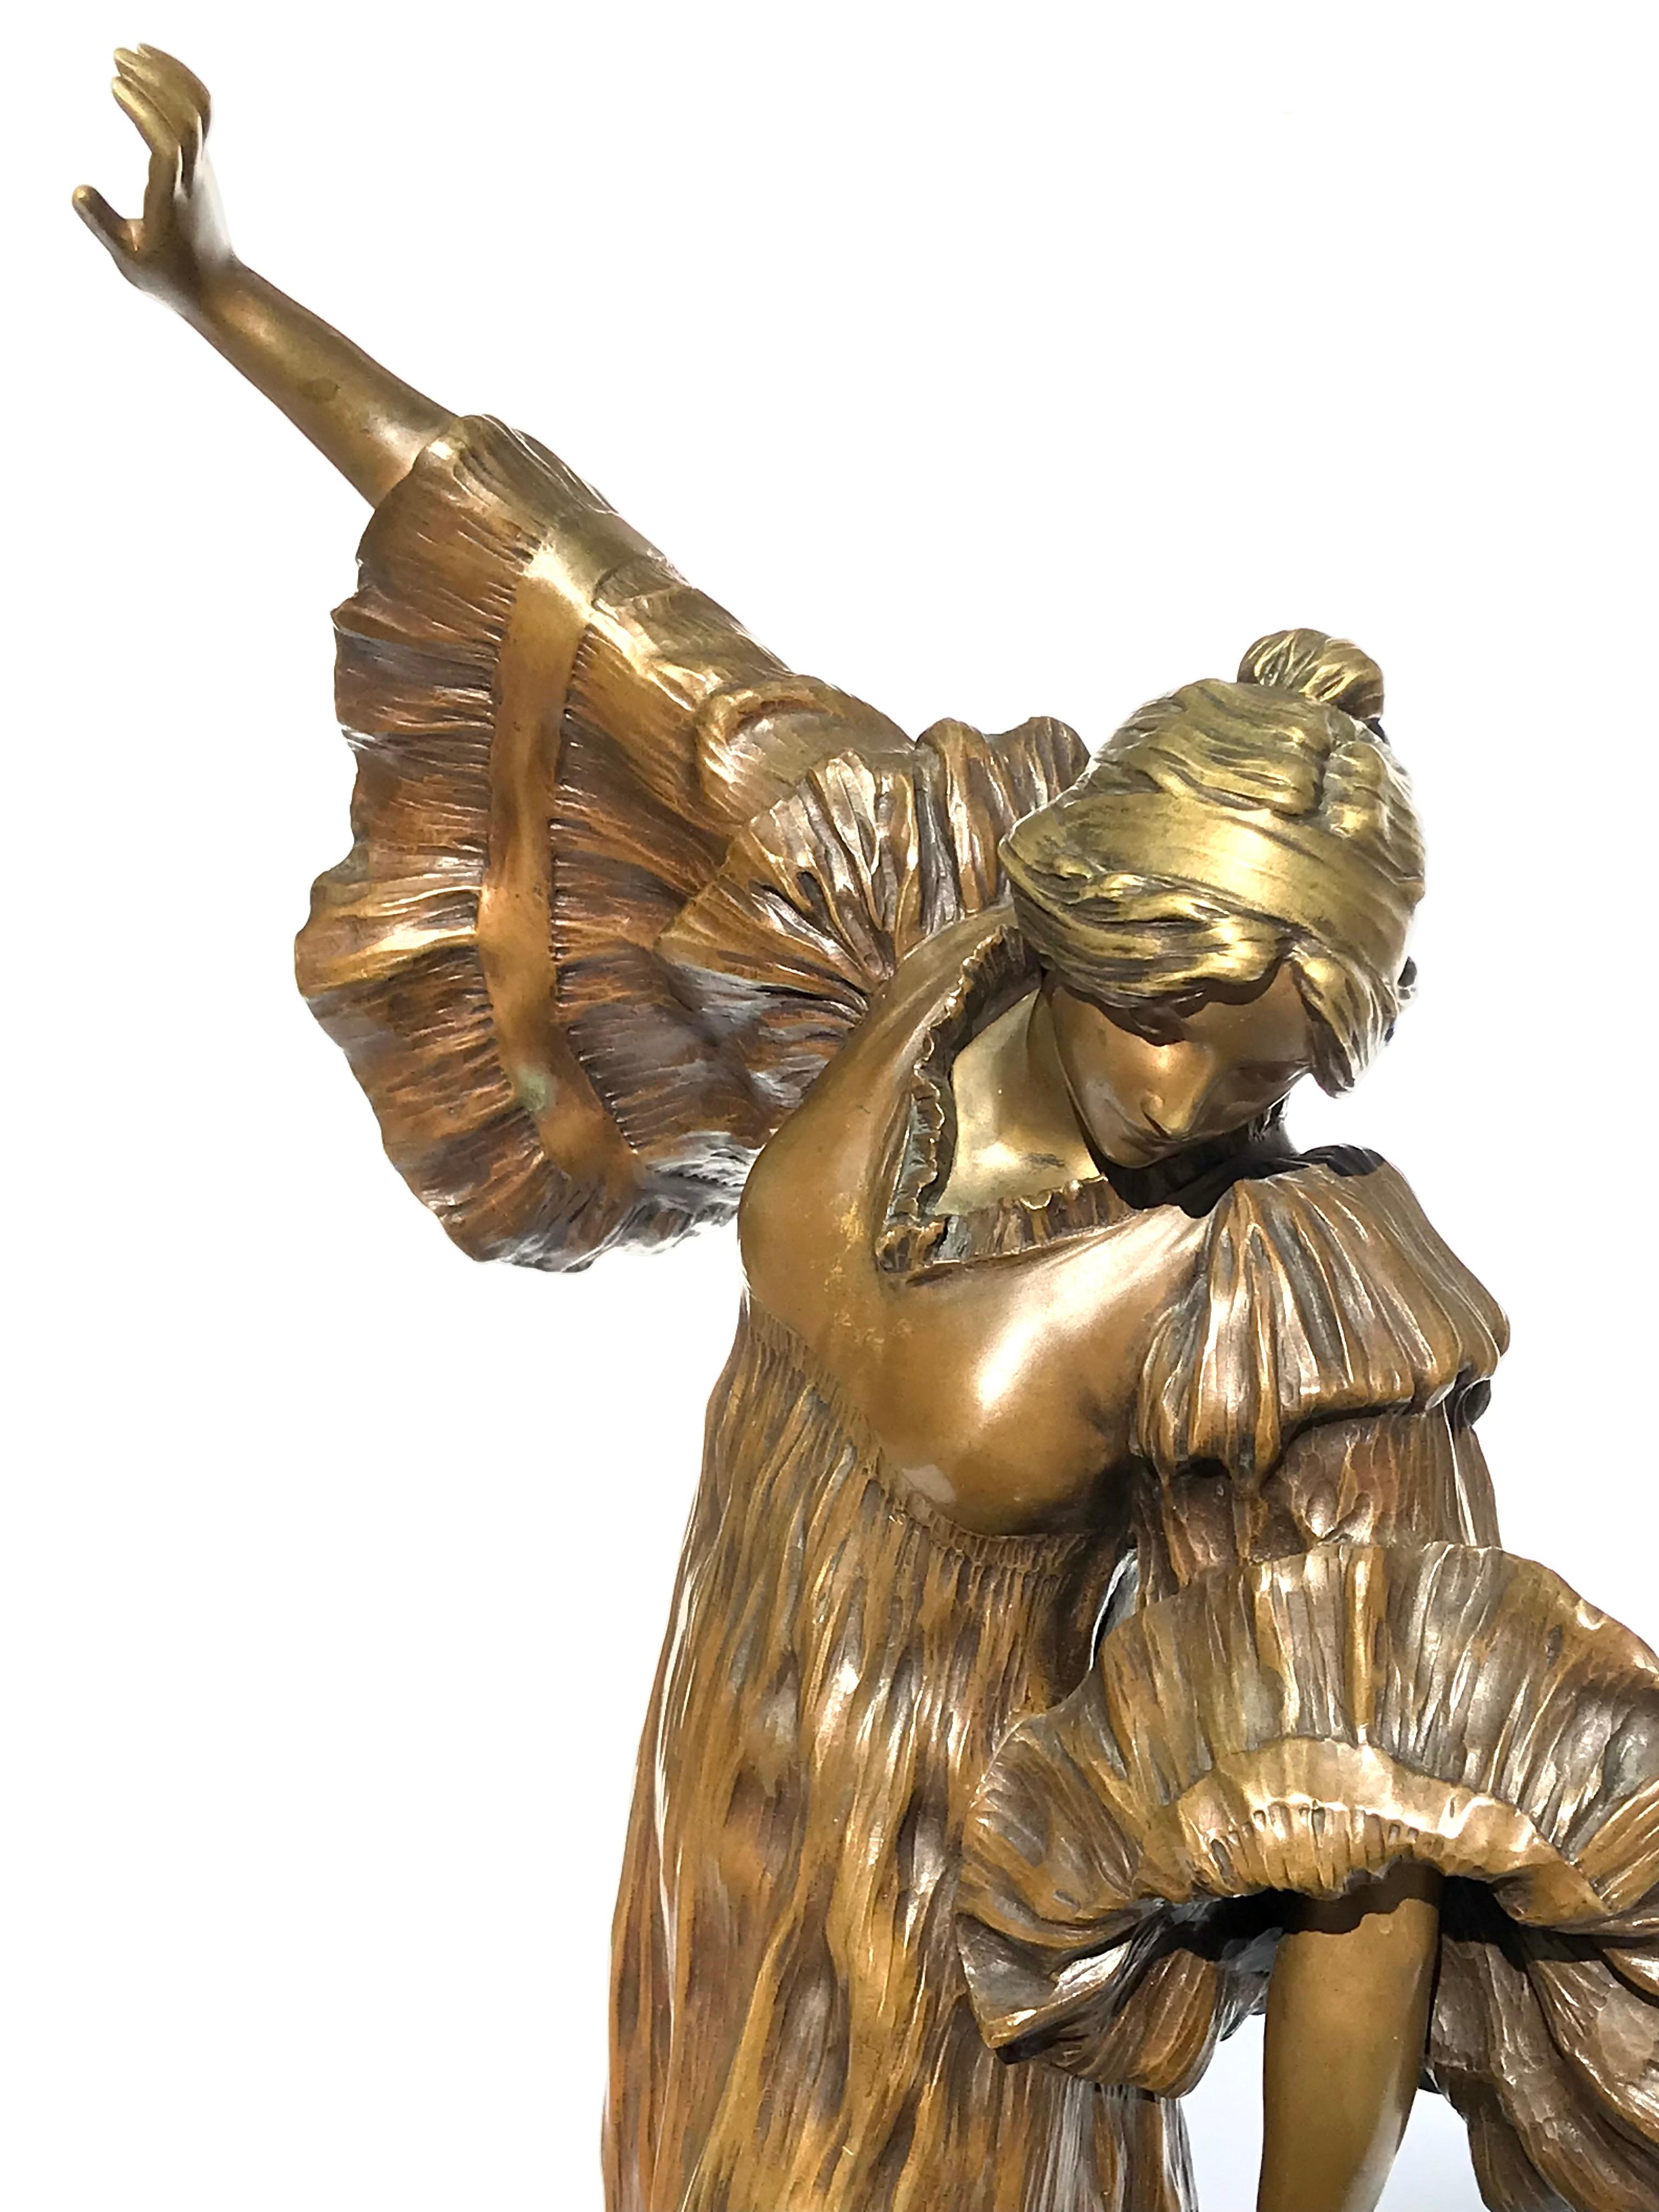 
AGATHON LÉONARD (FRANZÖSISCH, 1841-1923) Danseuse au Cothurne

Signiert 'A Léonard' (auf der Rückseite) mit Gießerei-Stempel von Susse Frères, außerdem gestempelt 'M'.

Vergoldete Bronze, hellbraune Patina
21 Zoll hoch
11,5 Zoll breit
7,5 Zoll